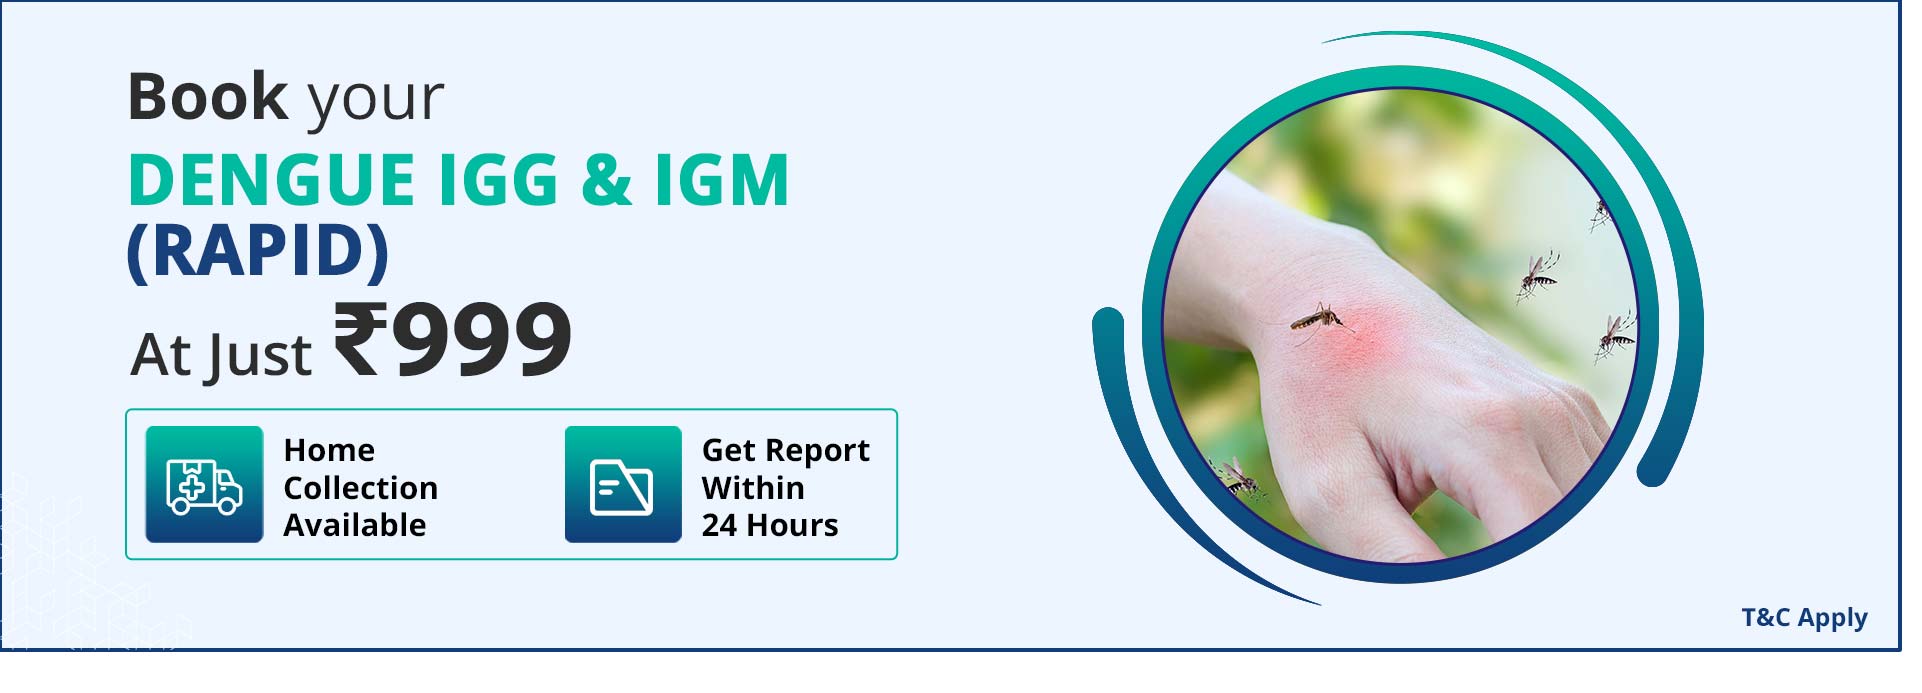 Dengue IGG & IGM (Rapid)